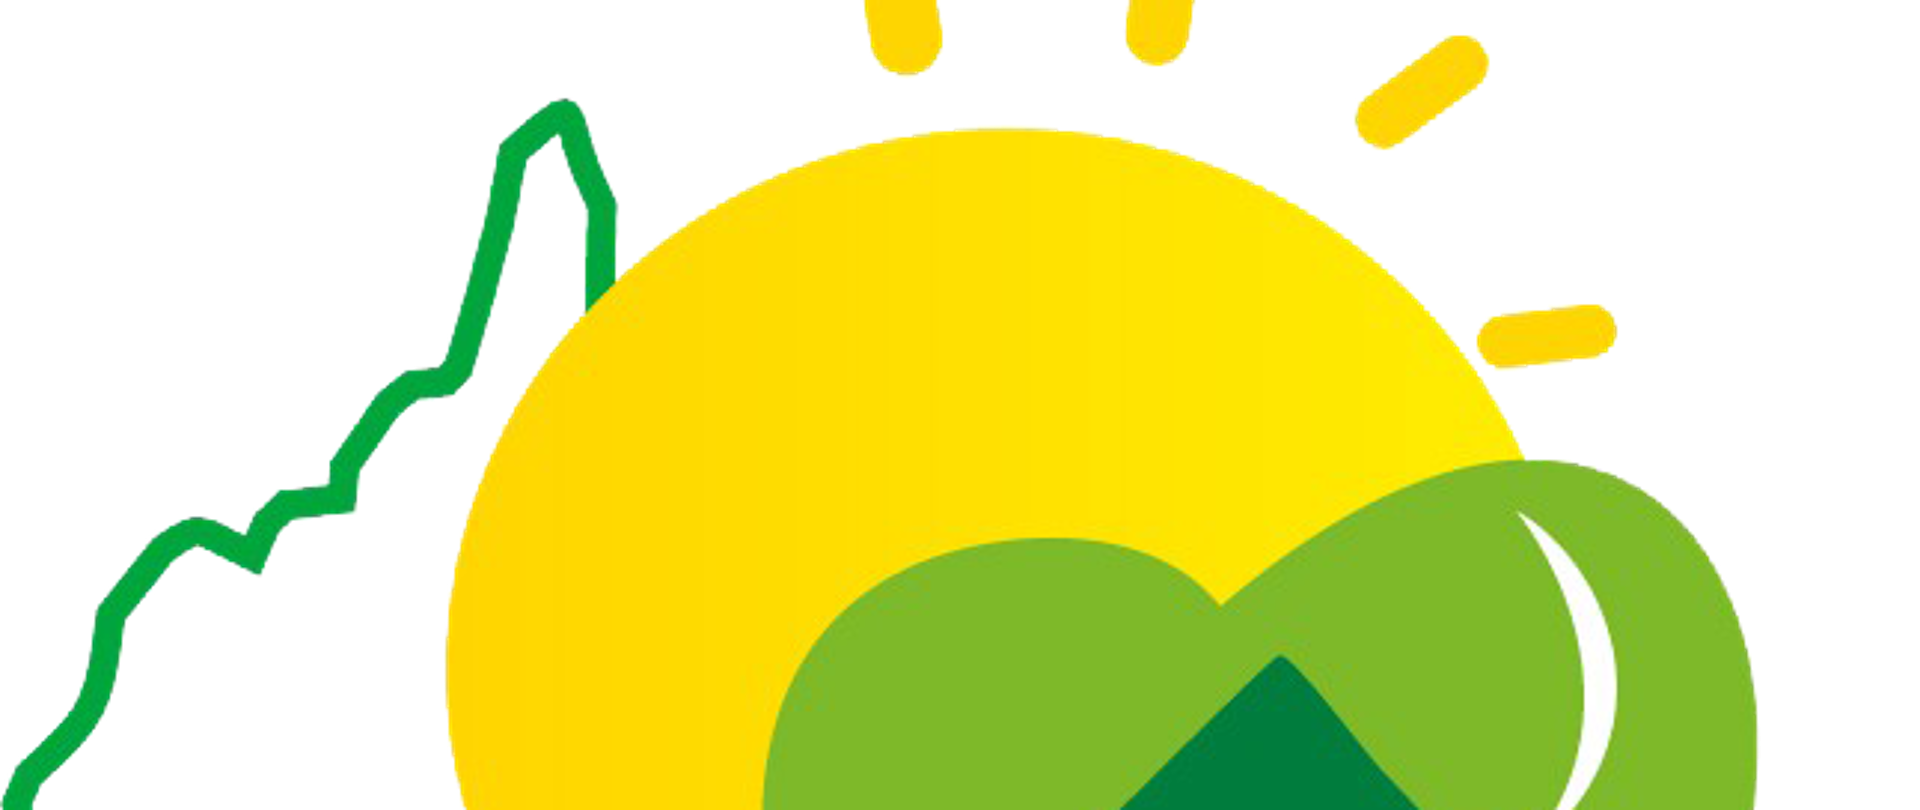 Logo gminy lubenia obrys mapy gminy napis gmina lubenia symbol słońca jodełka oraz zielone serce